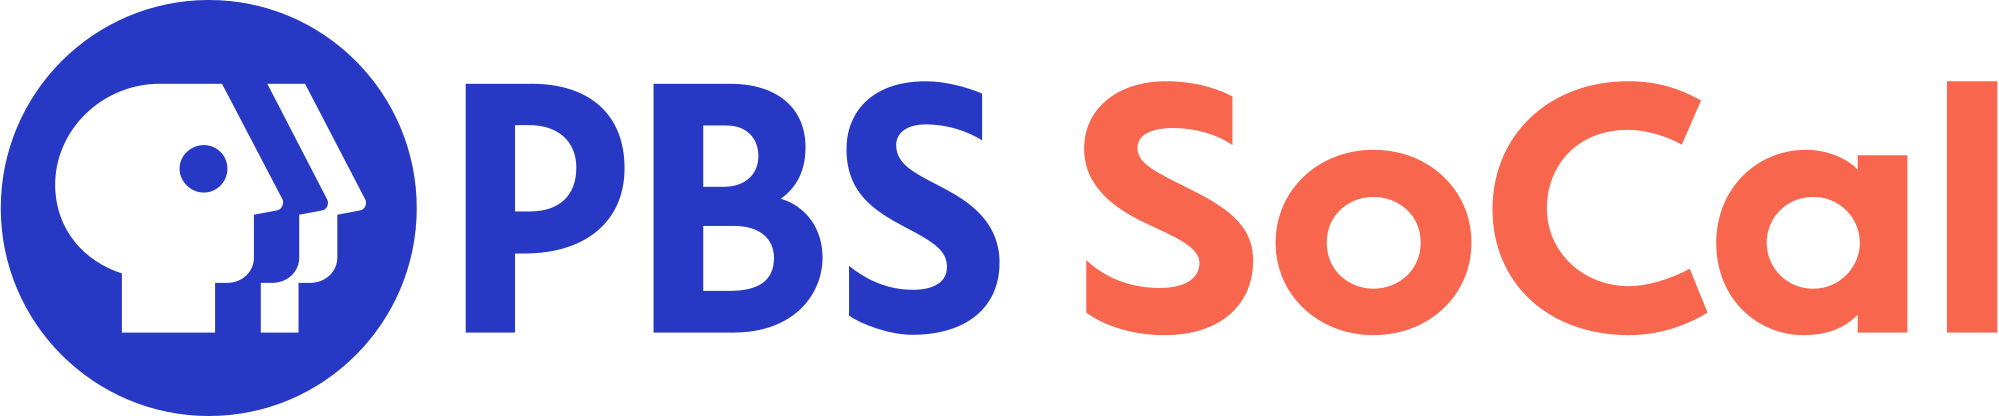 PBS SoCal - company